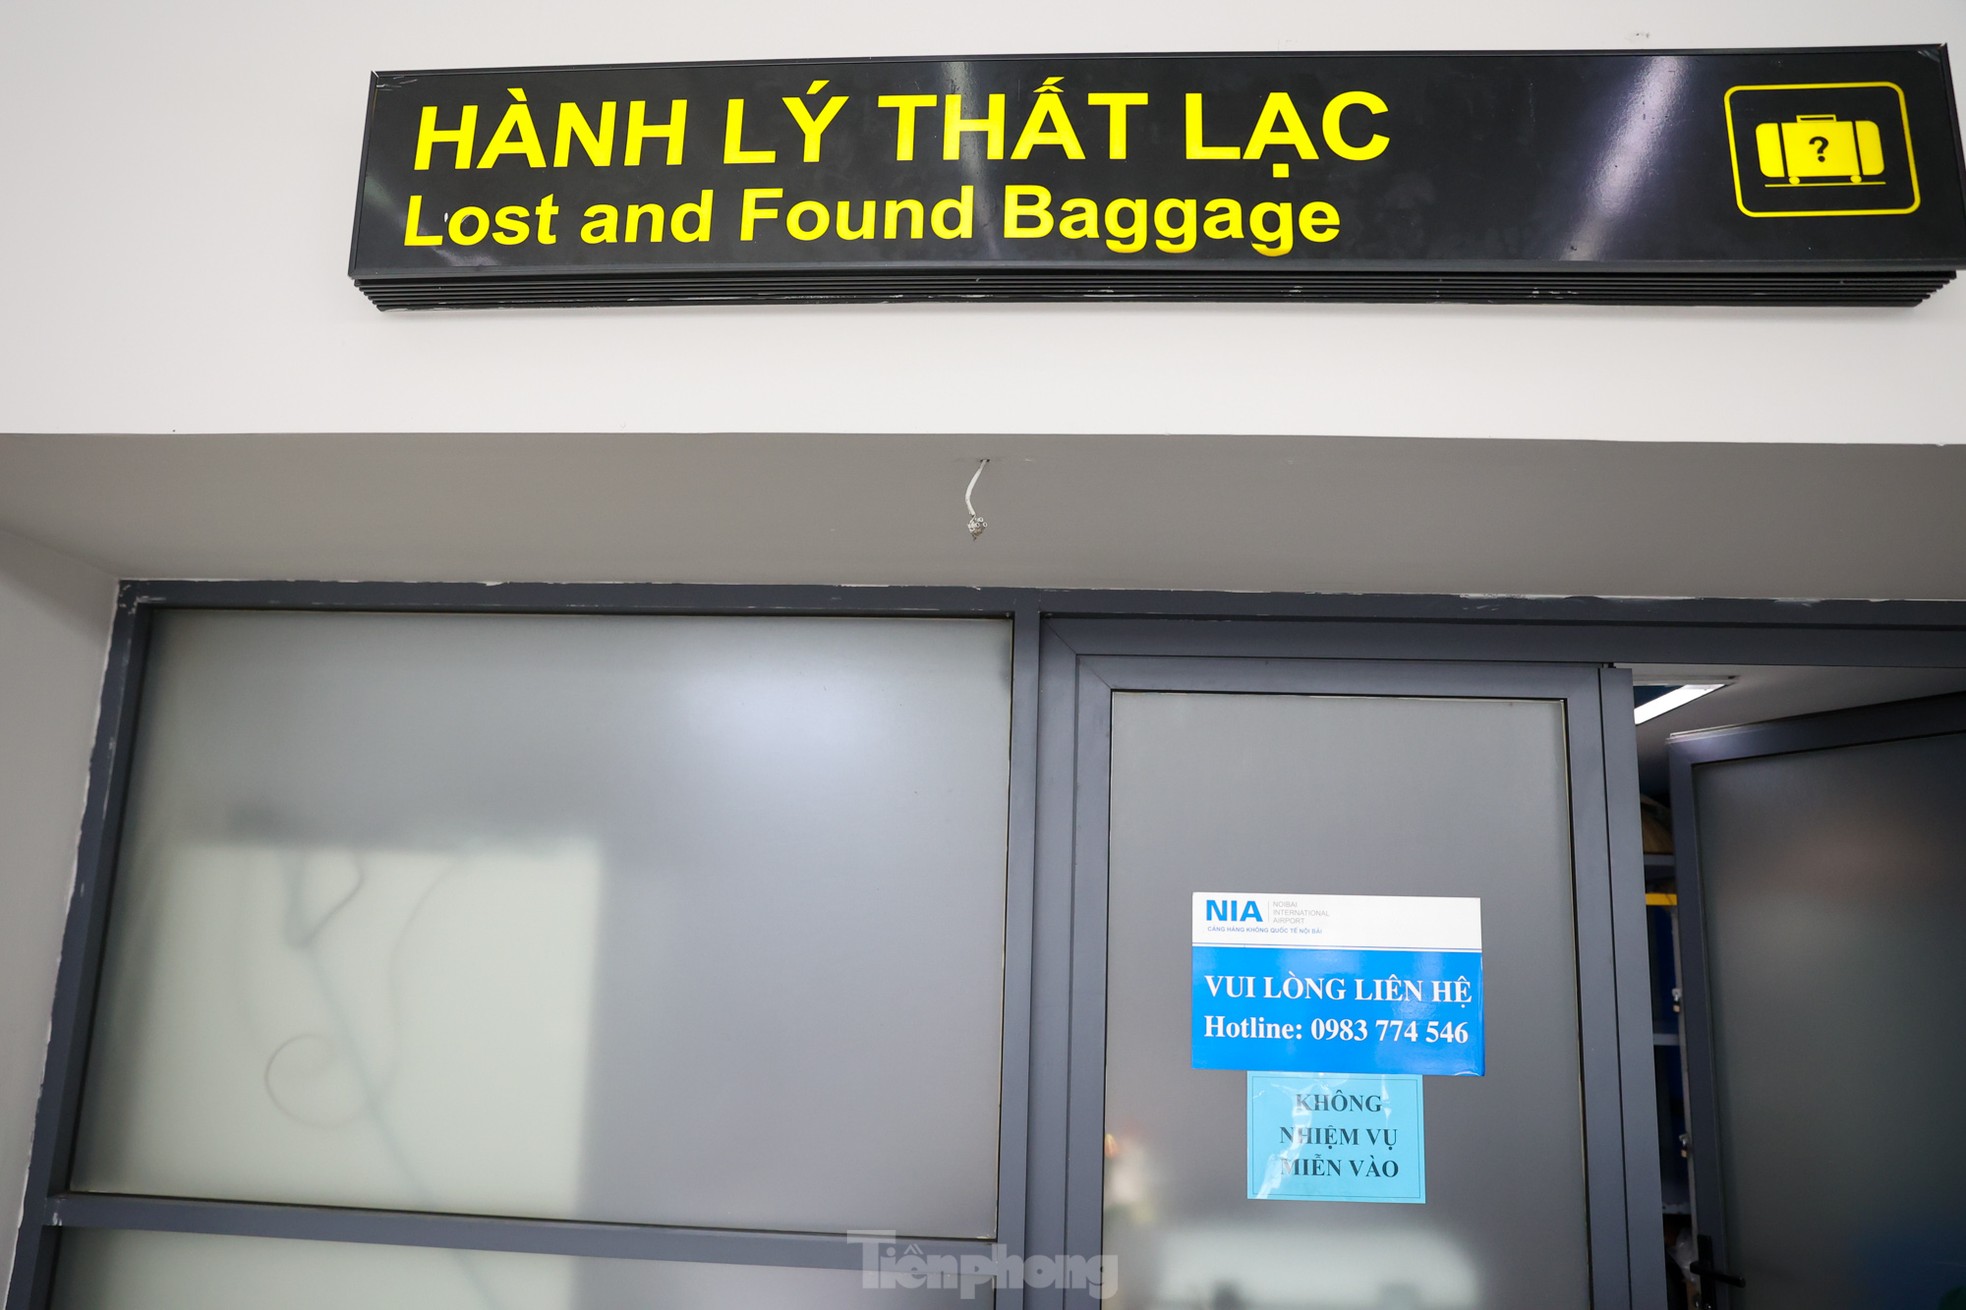 Kho hành lý thất lạc đầy ắp ở sân bay Nội Bài, cách nào để hành khách tìm lại nhanh nhất? - Ảnh 3.